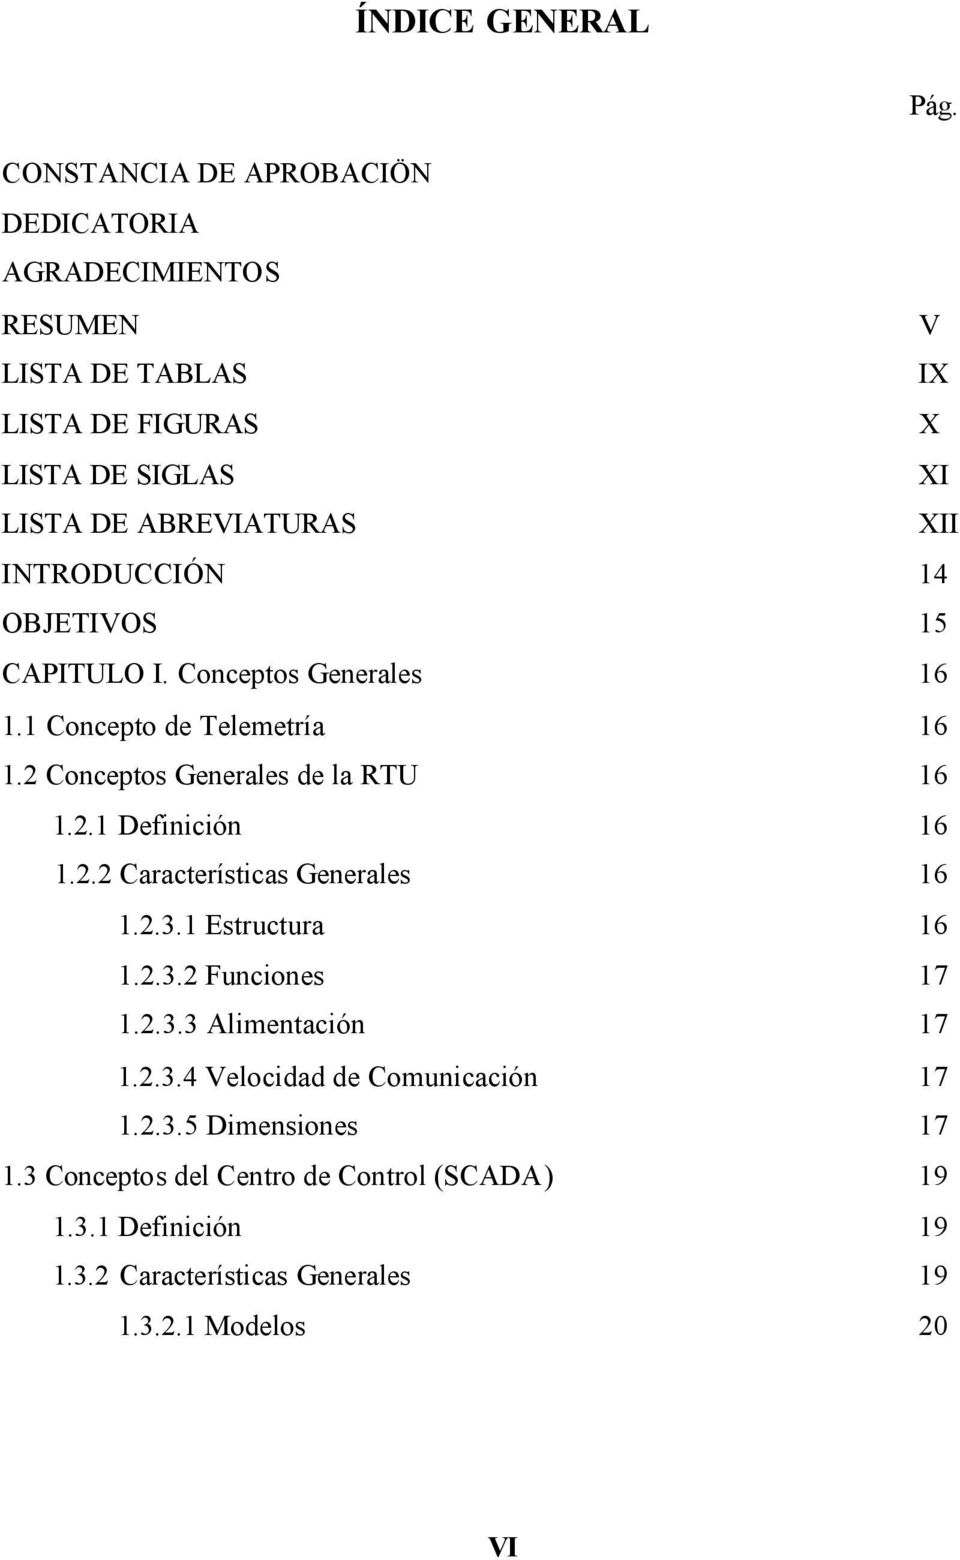 INRODUCCIÓN 14 OBJEIVOS 15 CAPIULO I. Conceptos Generales 16 1.1 Concepto de elemetría 16 1.2 Conceptos Generales de la RU 16 1.2.1 Definición 16 1.